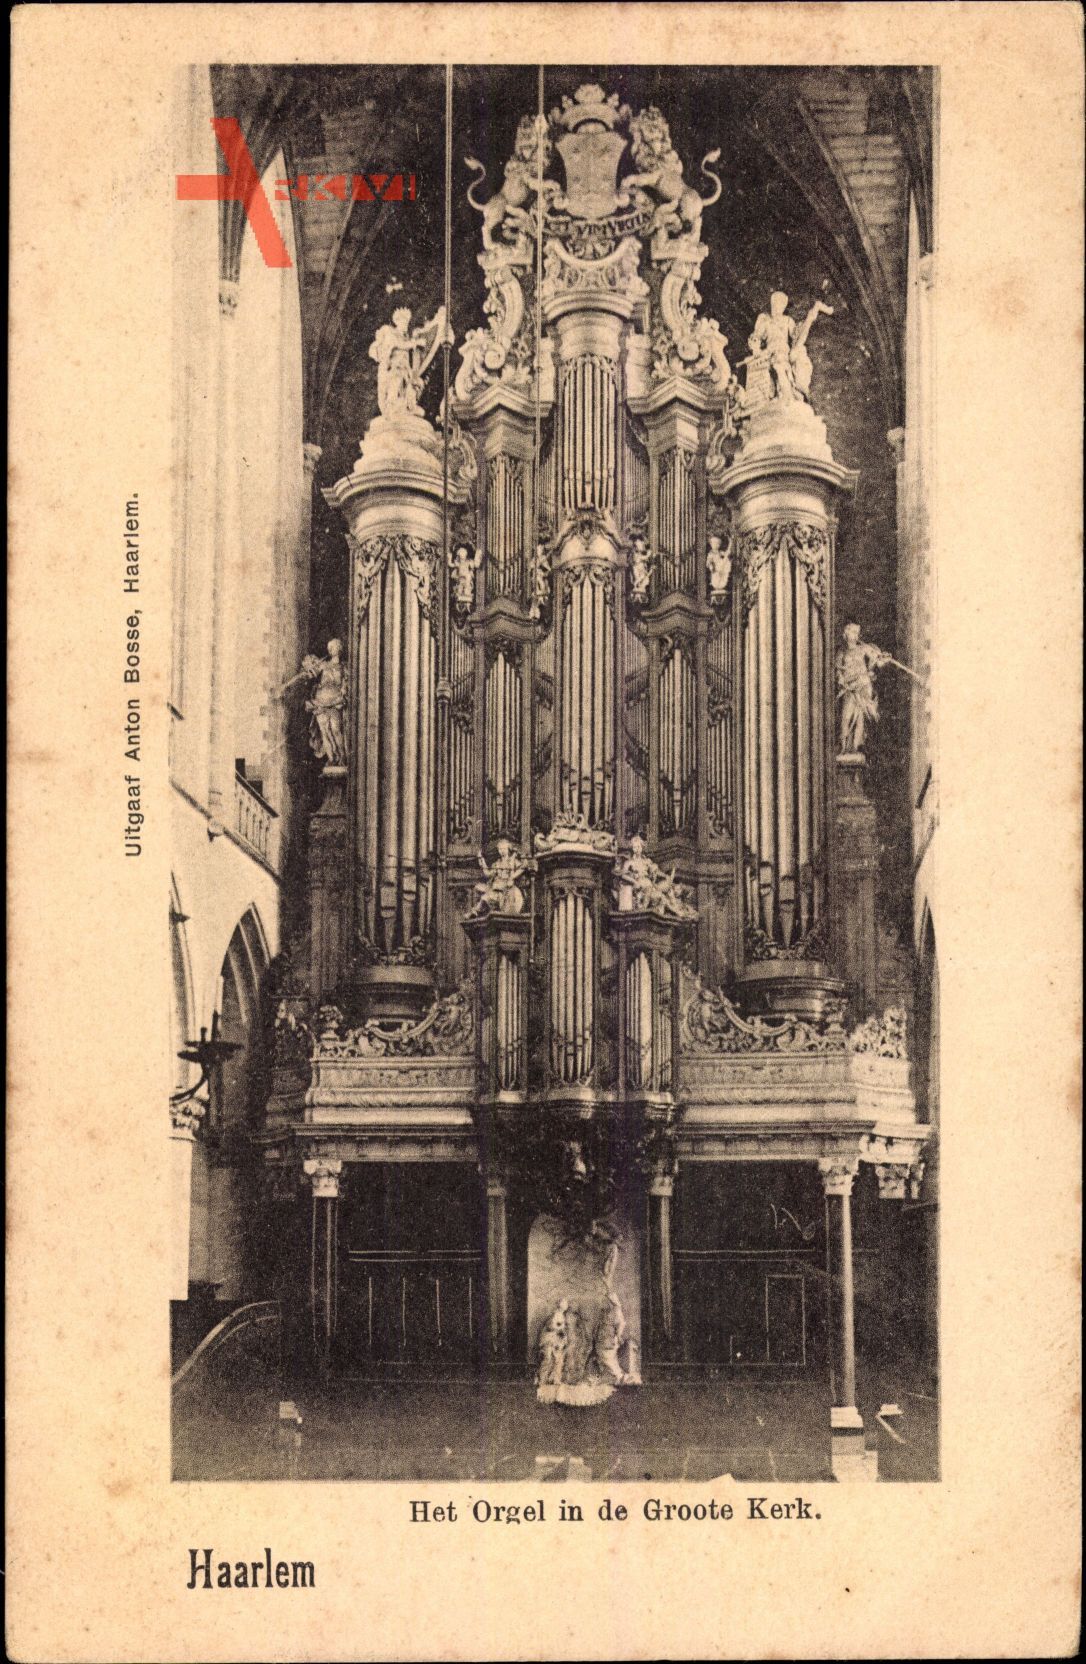 Haarlem Nordholland Niederlande, Het Orgel in de Groote Kerk